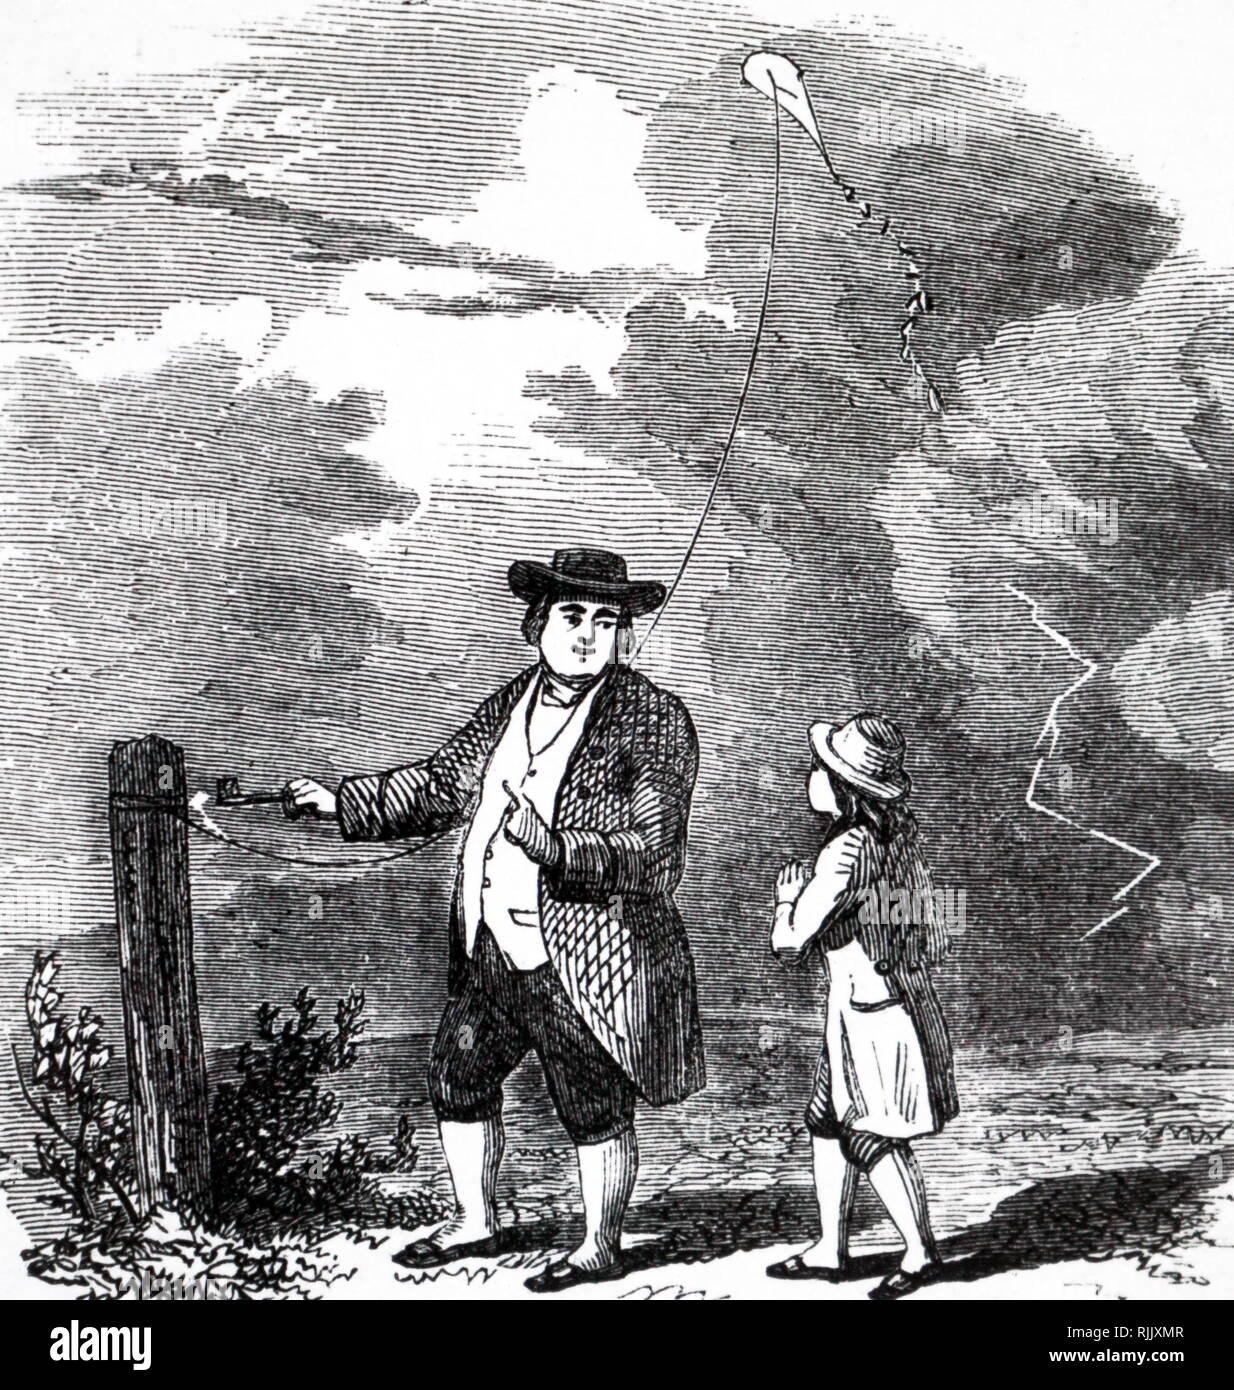 L'artista impressione di Benjamin Franklin (1706-1790) inchiesta di natura elettrica del fulmine nel settembre 1752. Franklin e il suo assistente sono volare un aquilone in una tempesta e Franklin sono il disegno di una scintilla off il kite stringa. Datata del XIX secolo Foto Stock